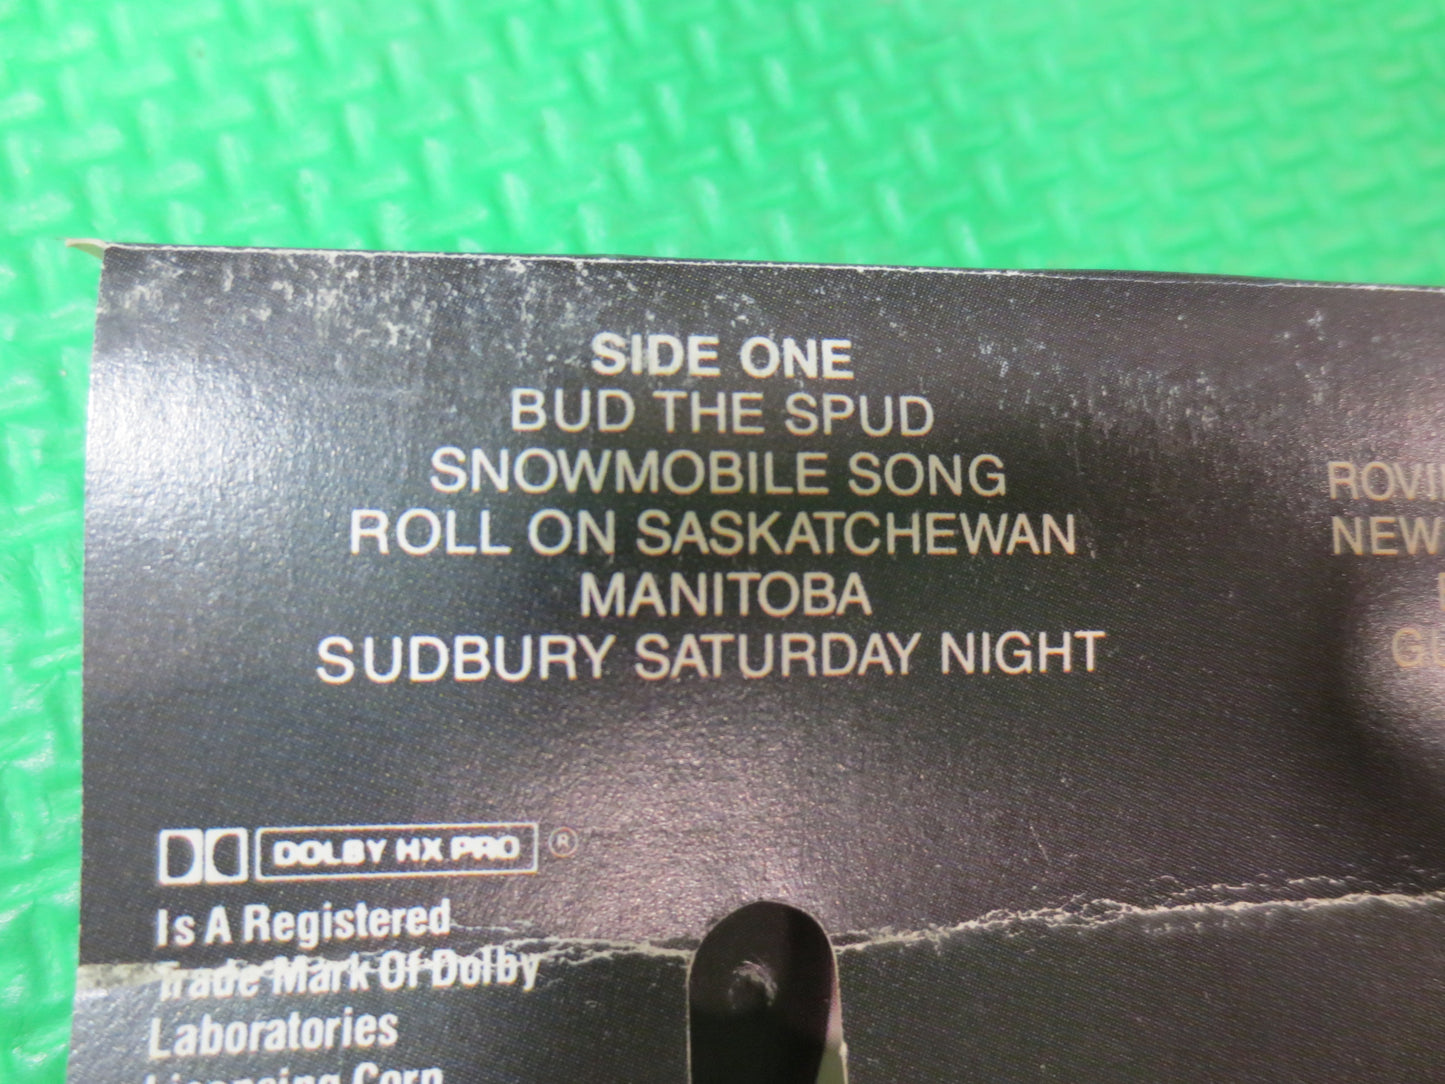 STOMPIN' TOM Tape, A PROUD Canadian, Stompin Tom Album, Stompin Tom Music, Tape Cassette, Vintage Cassette, 1990 Cassette